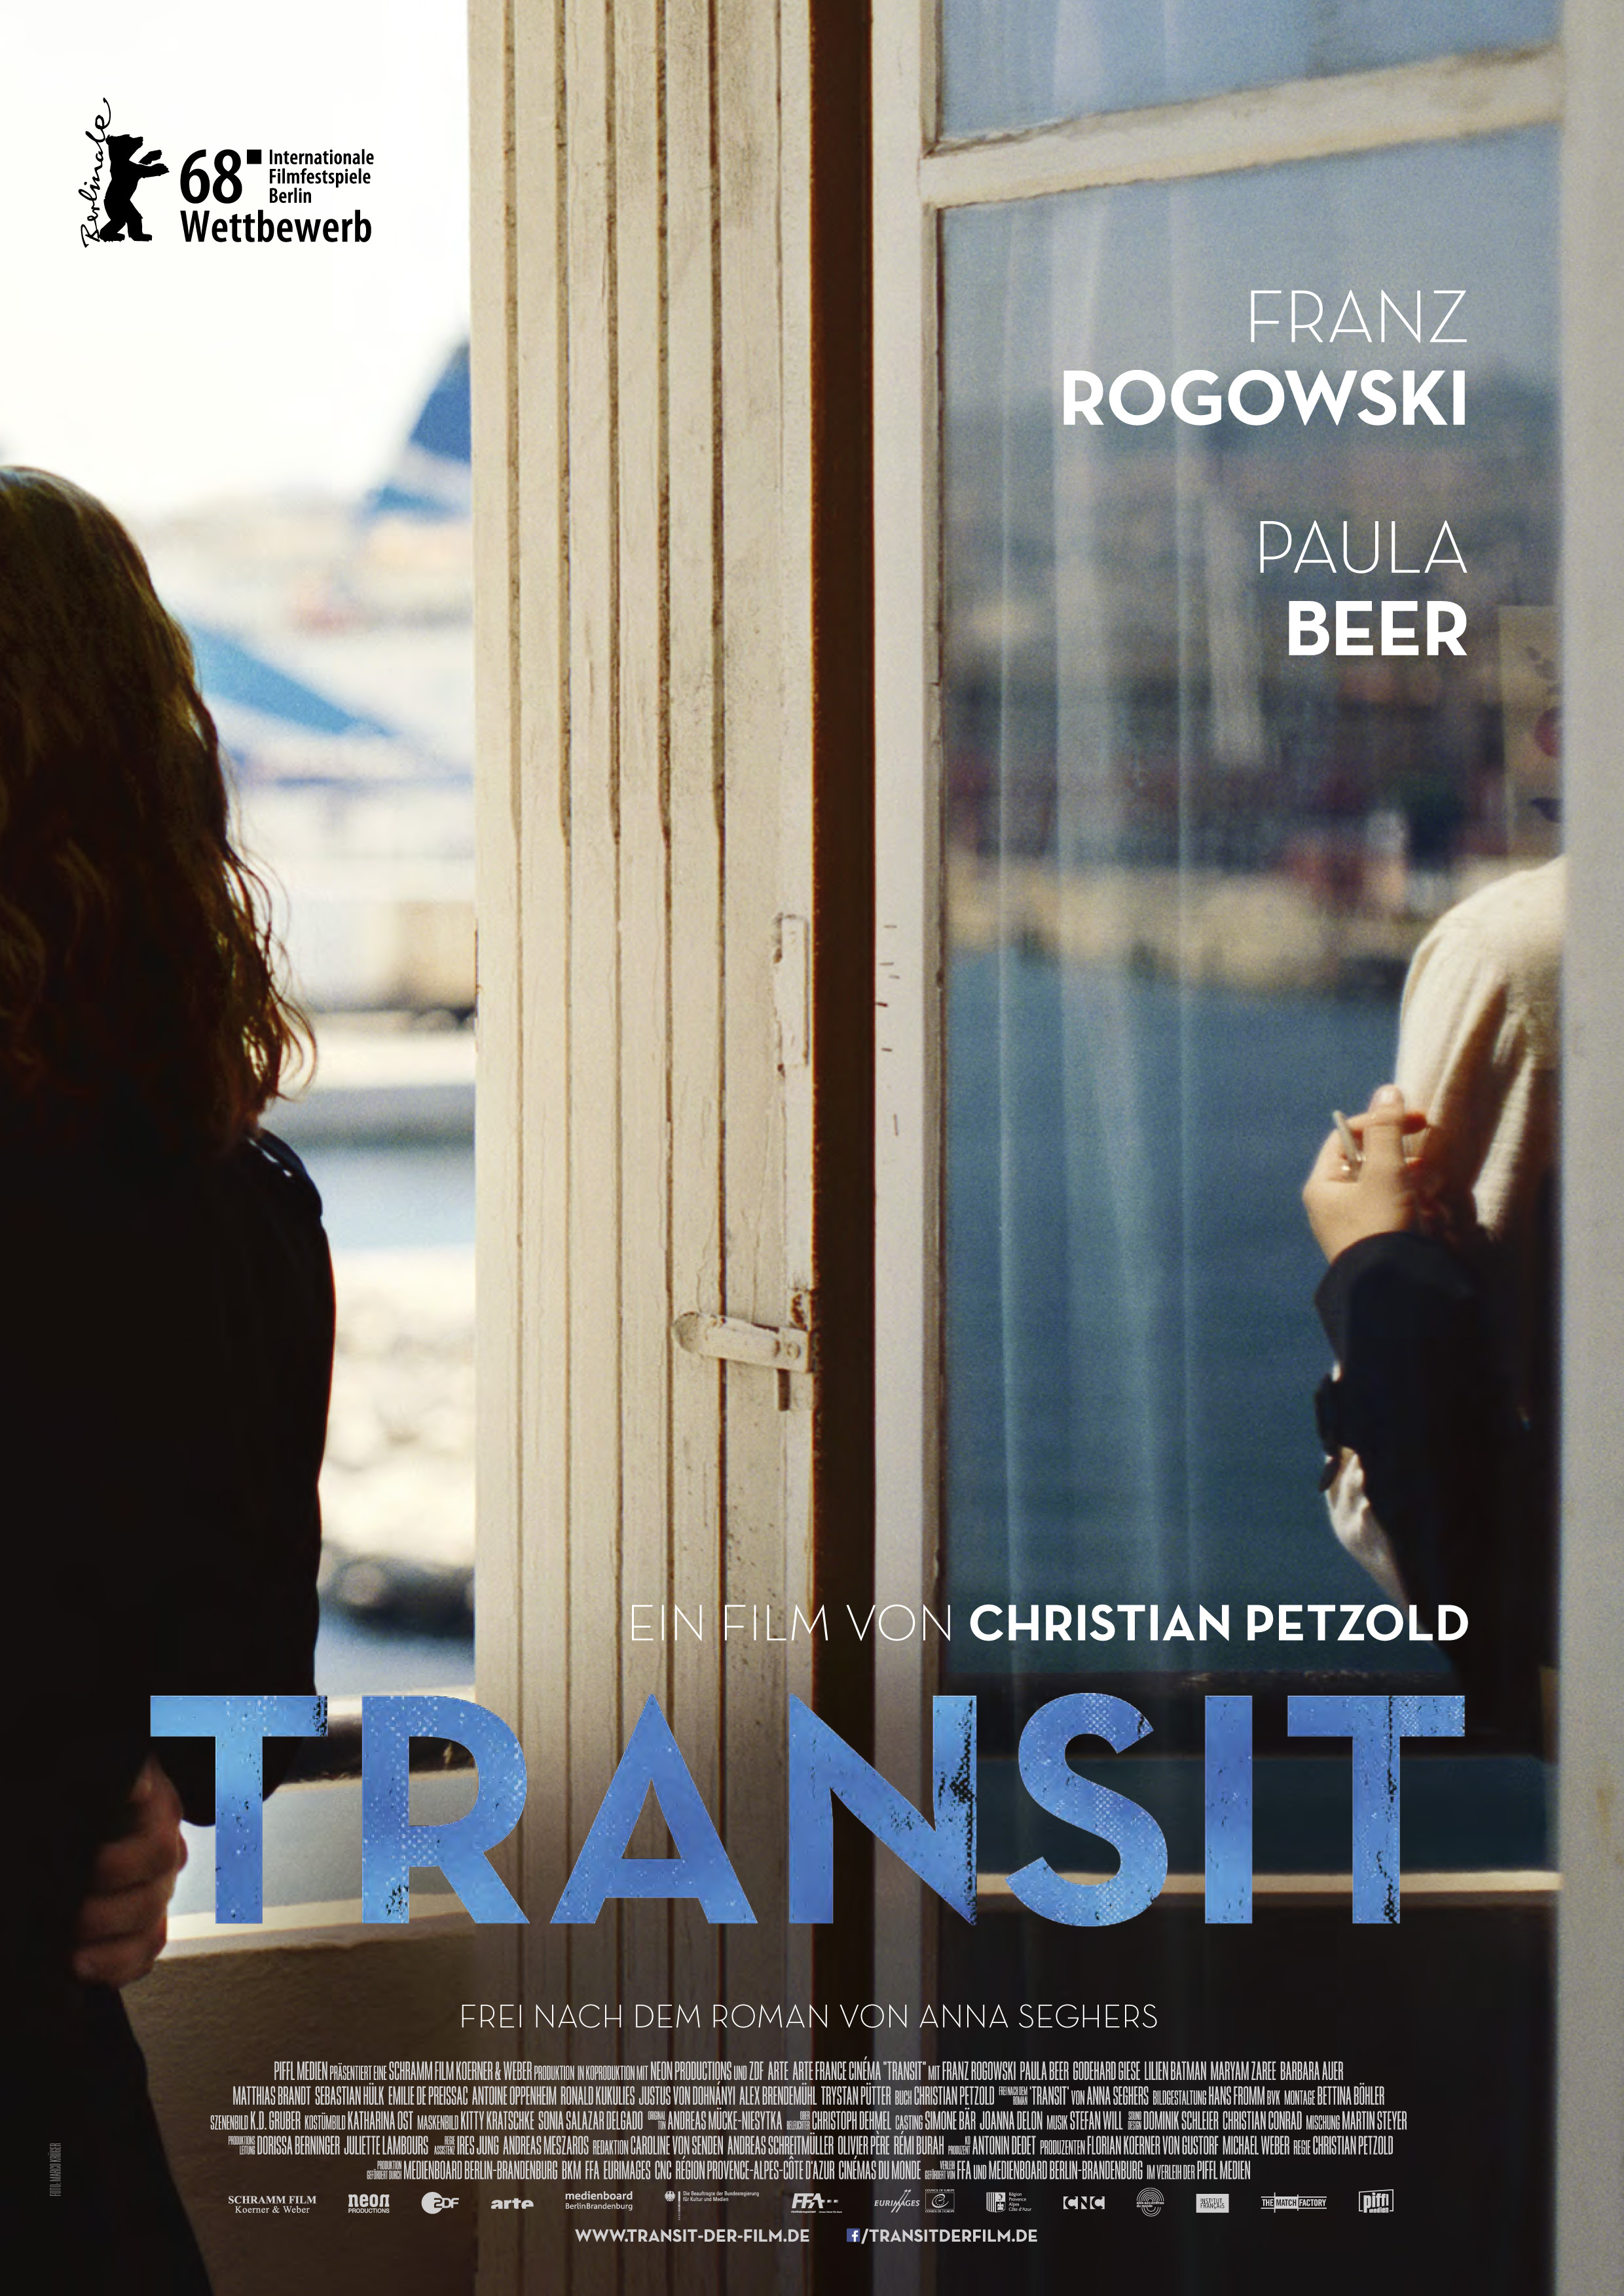 Filmplakat Transit